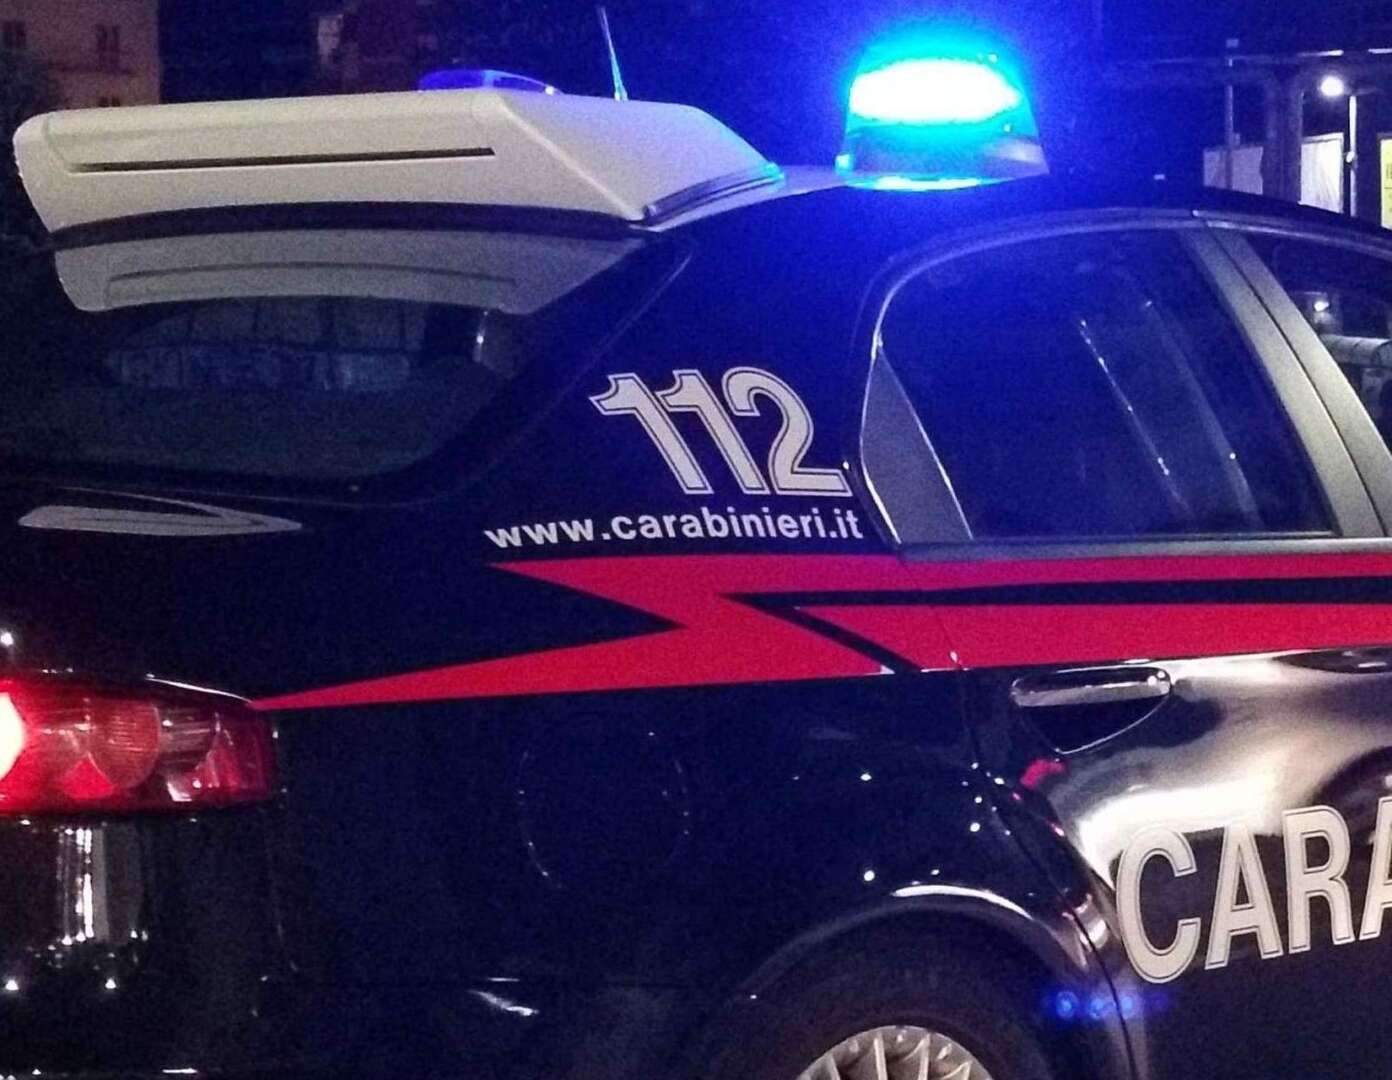 Giallo a Durazzano, donna trovata morta in casa: i carabinieri indagano